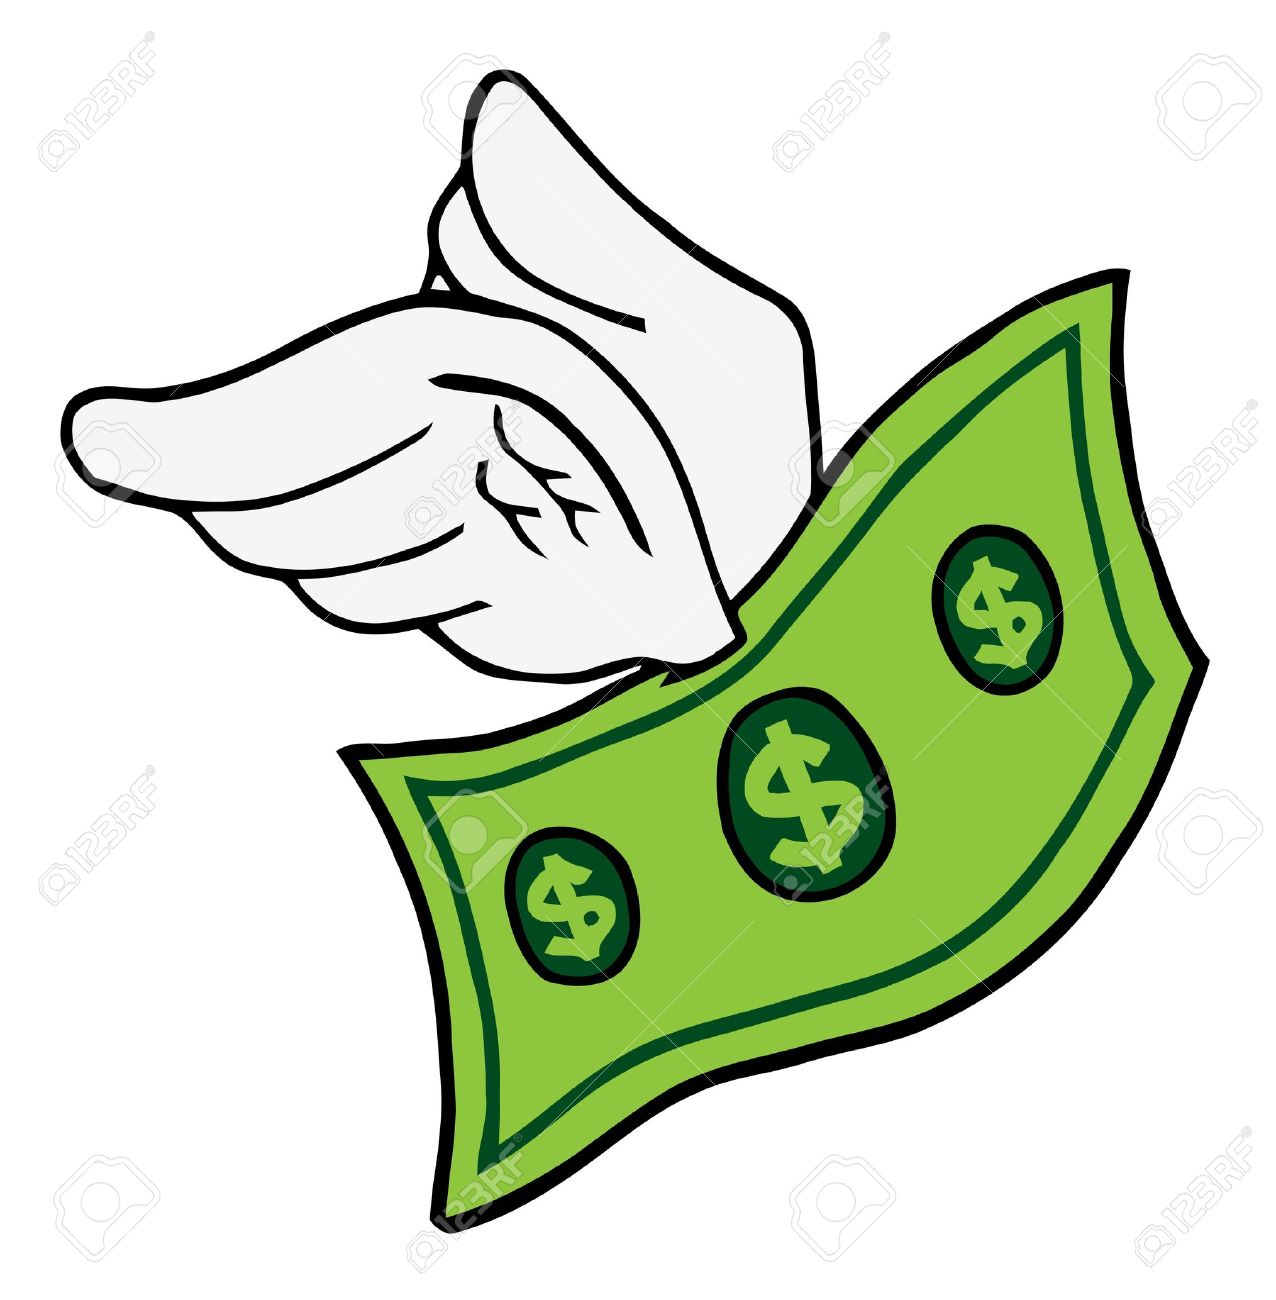 (http://previews.123rf.com/images/chudtsankov/chudtsankov1010/chudtsankov101000100/8018848-Flying-Dollar--Stock-Vector-money-flying-cartoon.jpg)